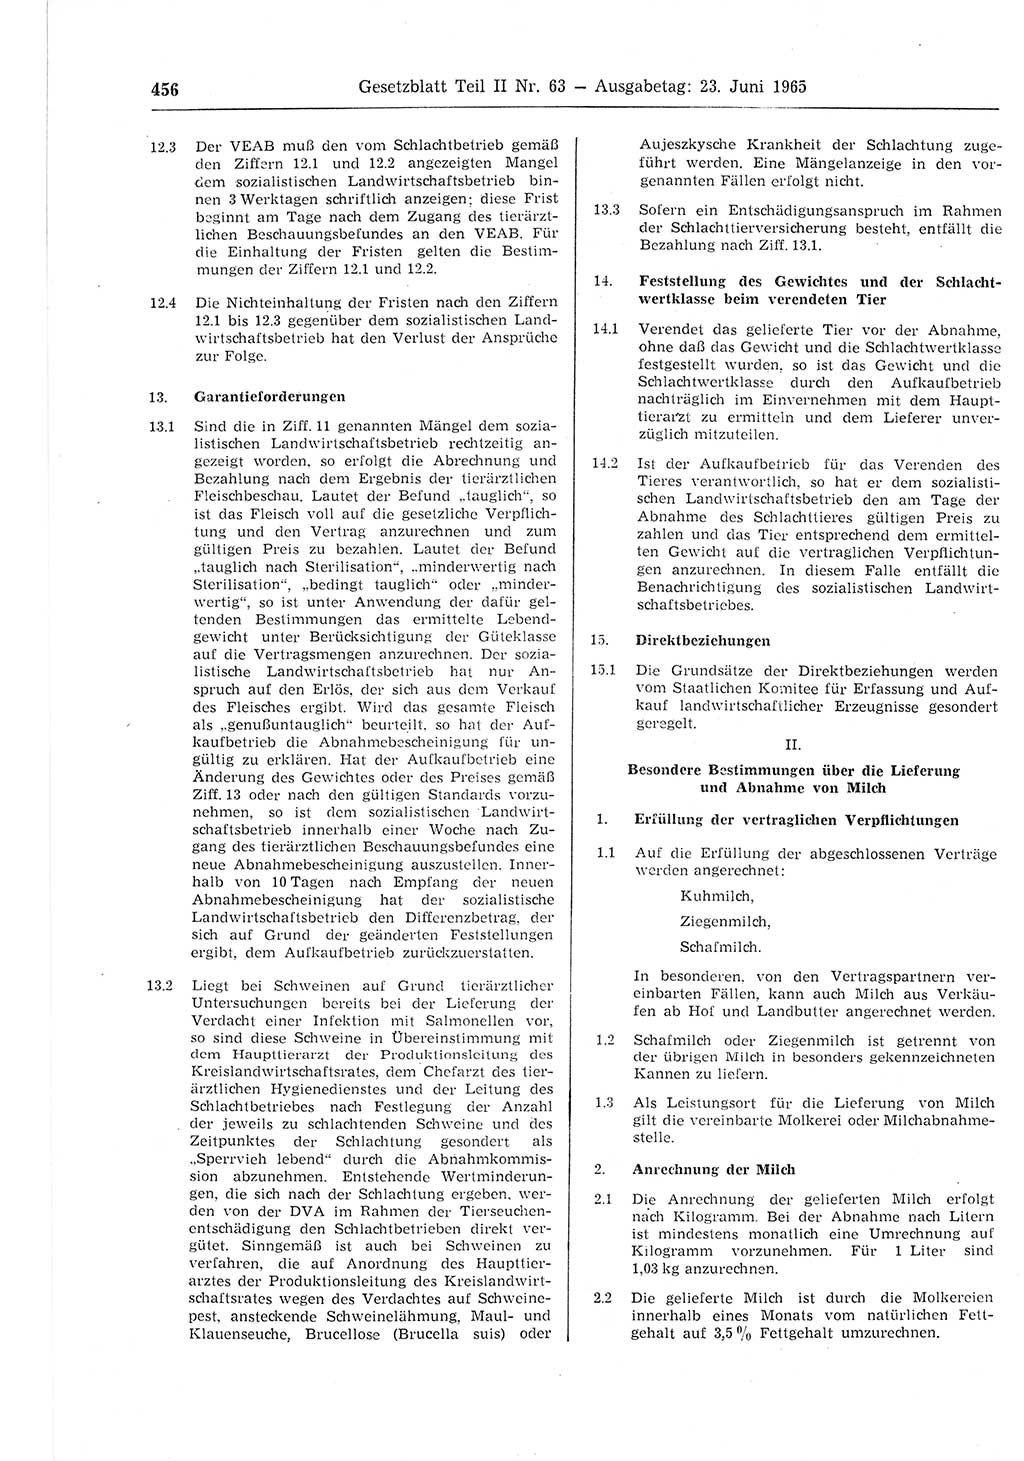 Gesetzblatt (GBl.) der Deutschen Demokratischen Republik (DDR) Teil ⅠⅠ 1965, Seite 456 (GBl. DDR ⅠⅠ 1965, S. 456)